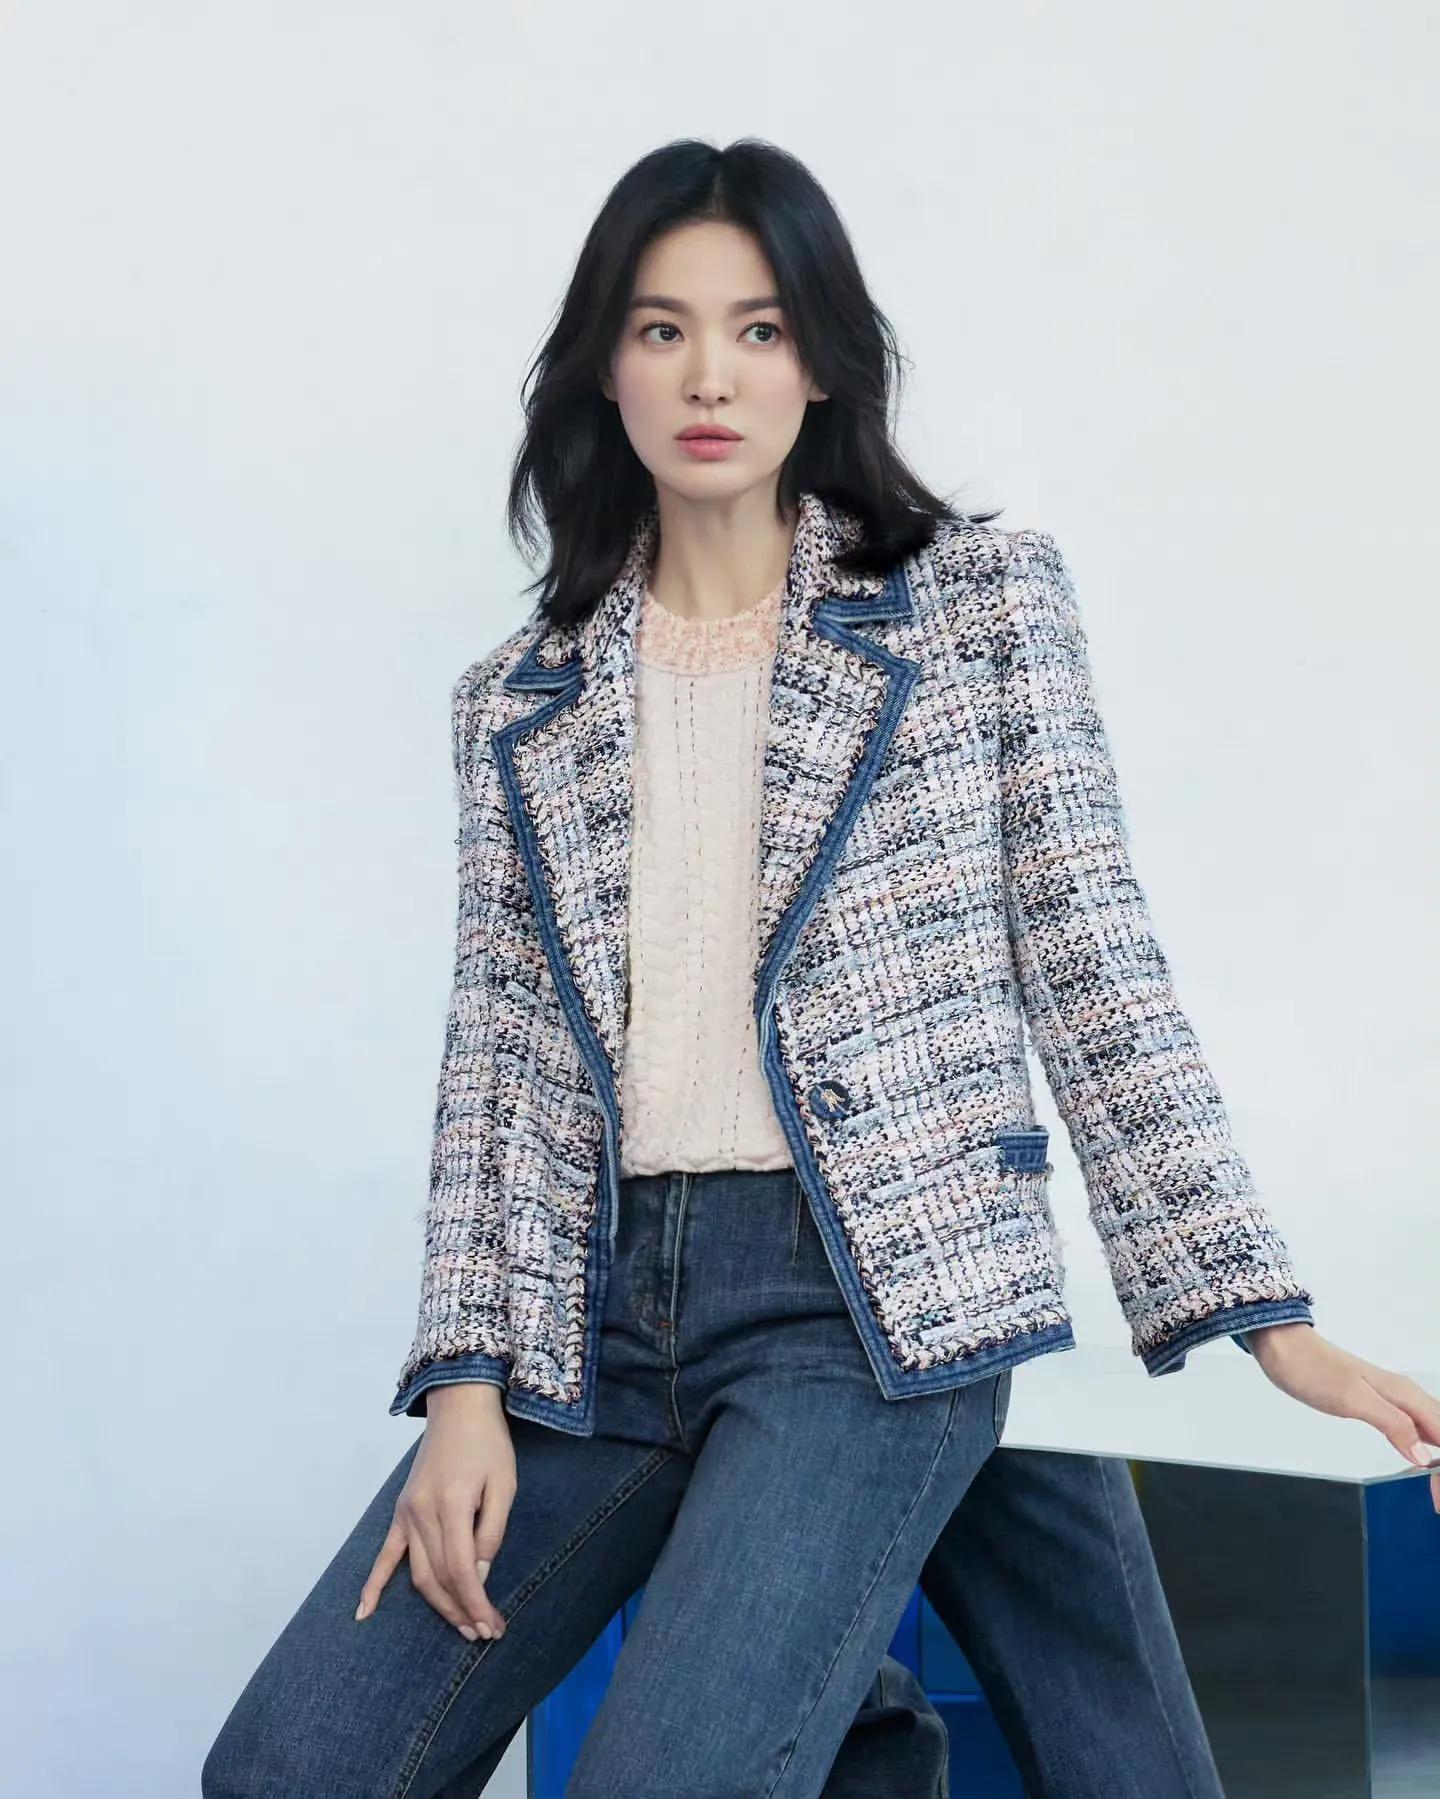 Song Hye Kyo mặc quần jeans đẹp từ phim ra ngoài đời, ngắm là muốn học hỏi - Ảnh 3.